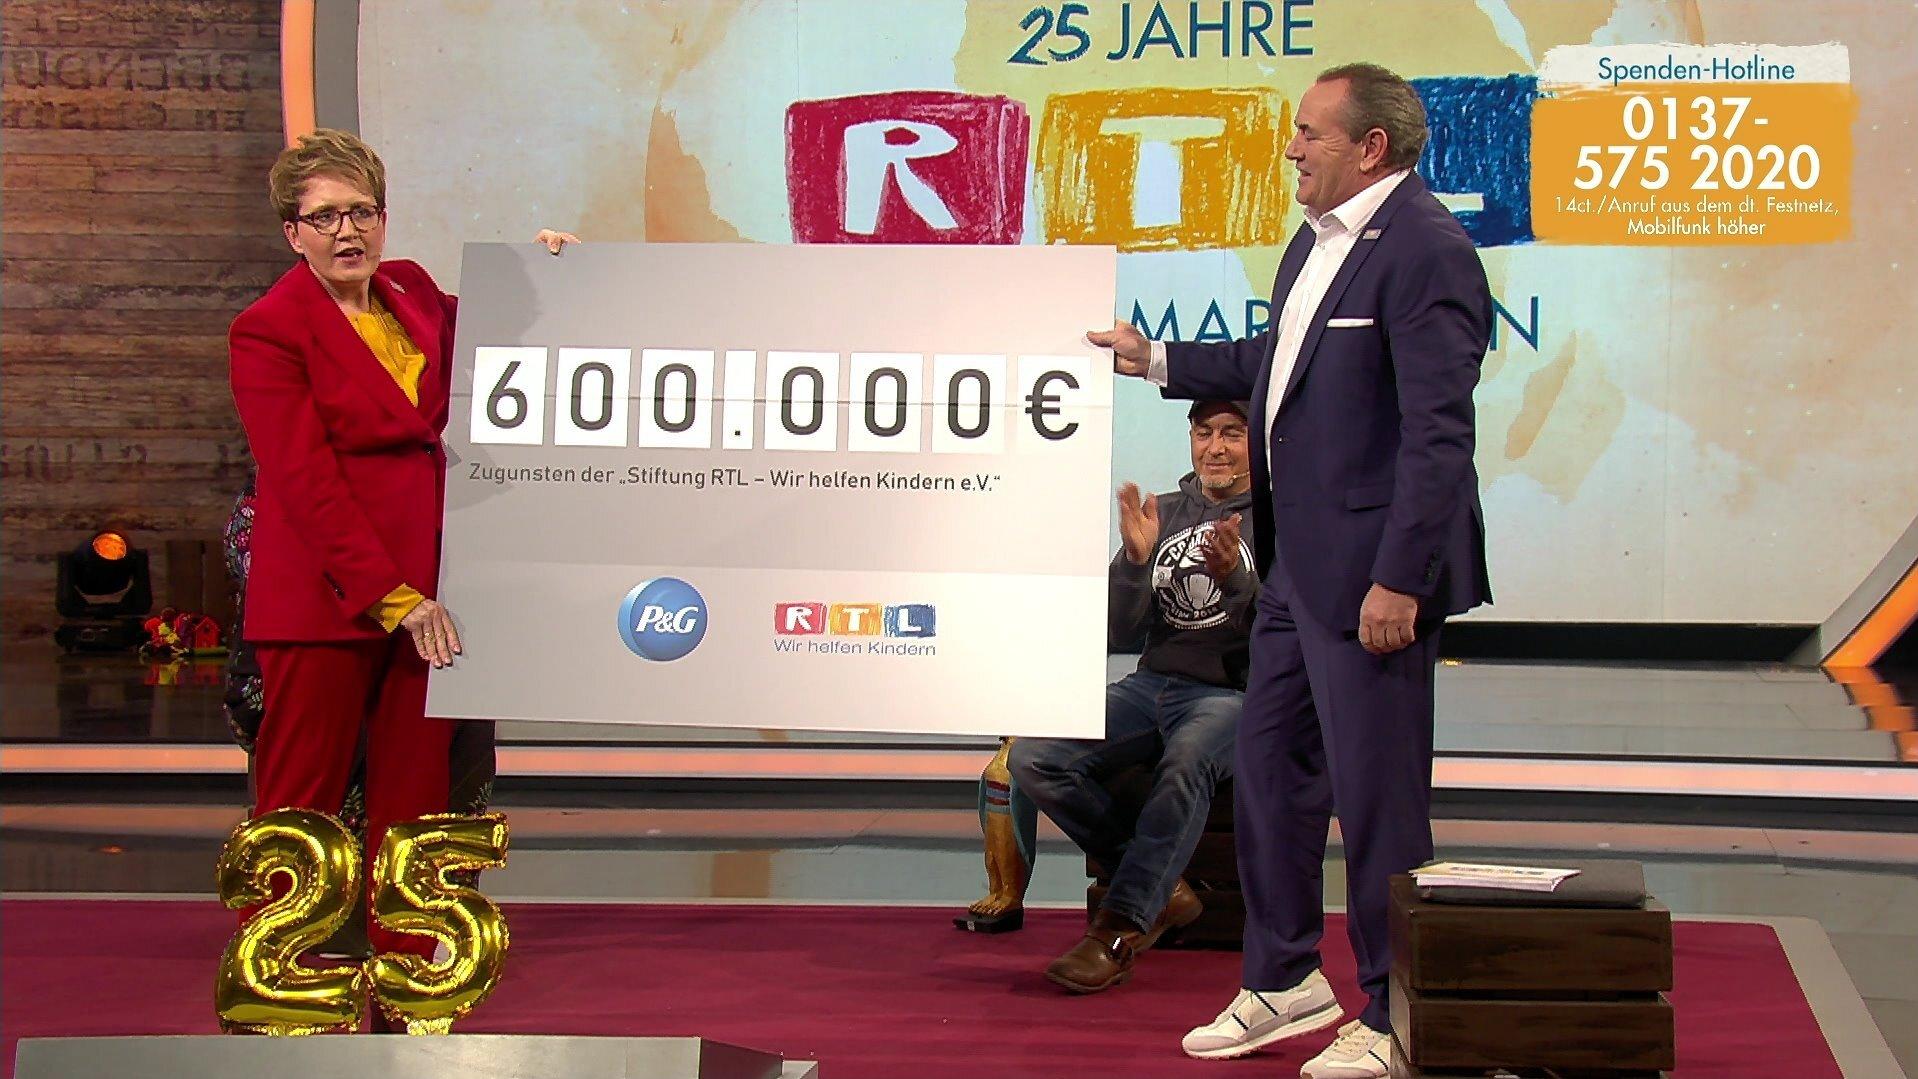 600.000 Euro spendet Procter & Gamble für den RTL-Spendenmarathon.